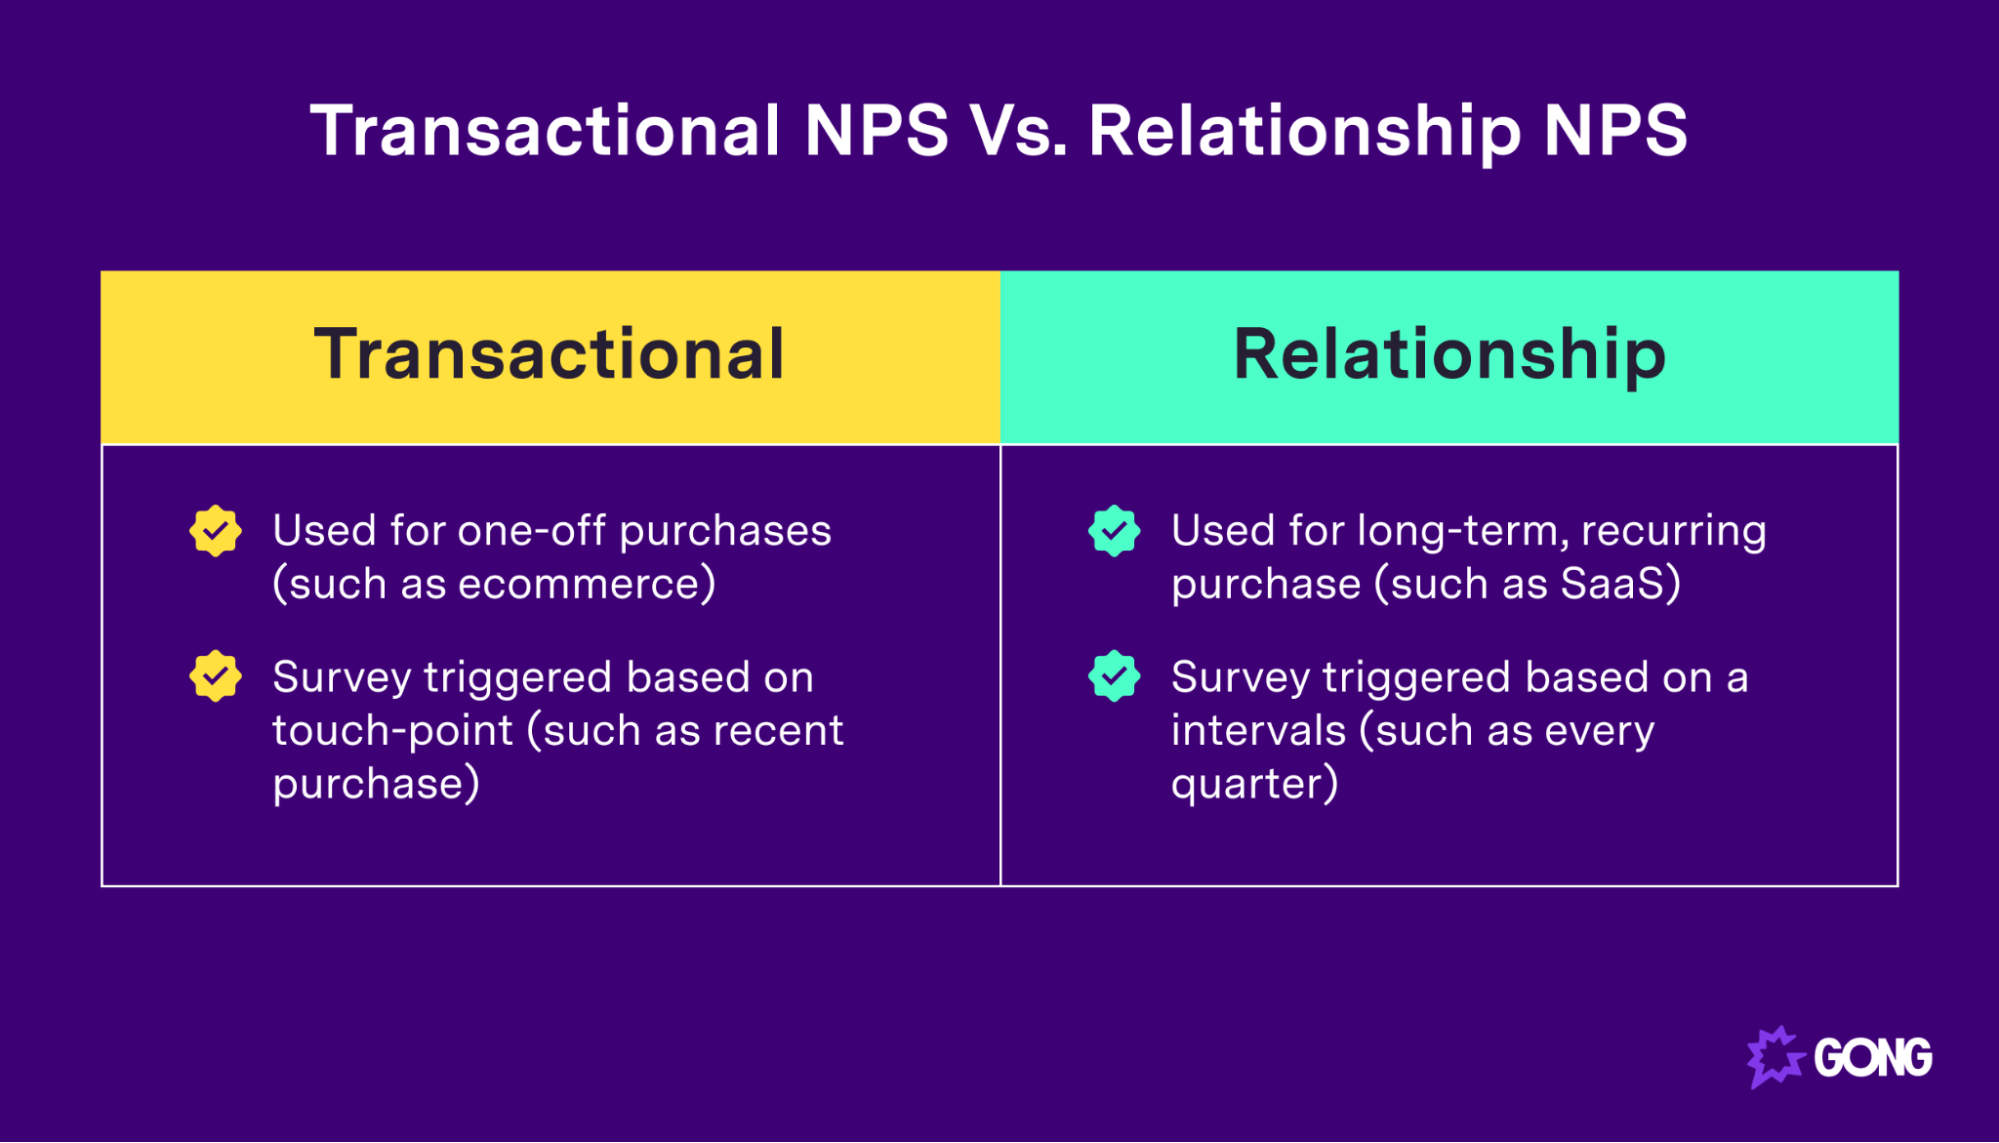 Transactional NPS vs. Relationship NPS